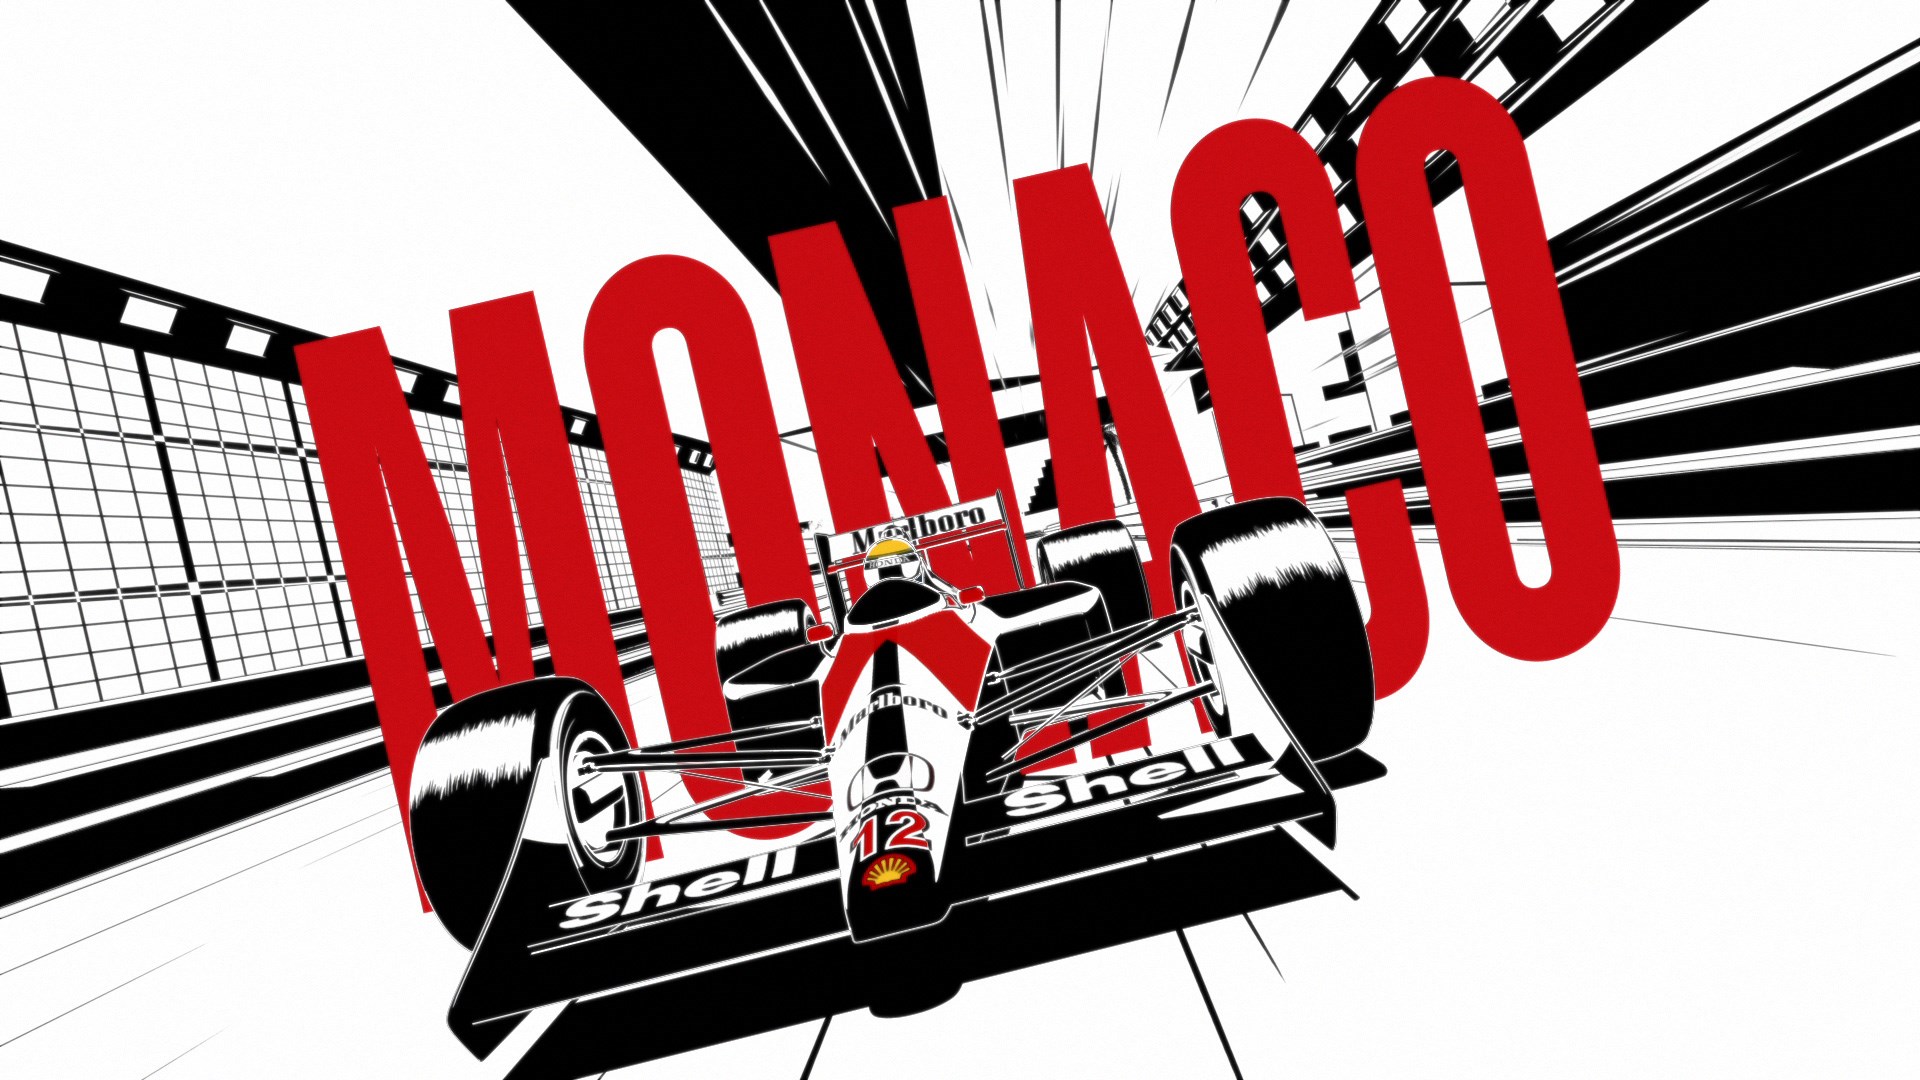 鈴鹿でのホームグランプリ直前 ホンダf1の歴史を60秒で振り返る Carview 自動車情報サイト 新車 中古車 Carview